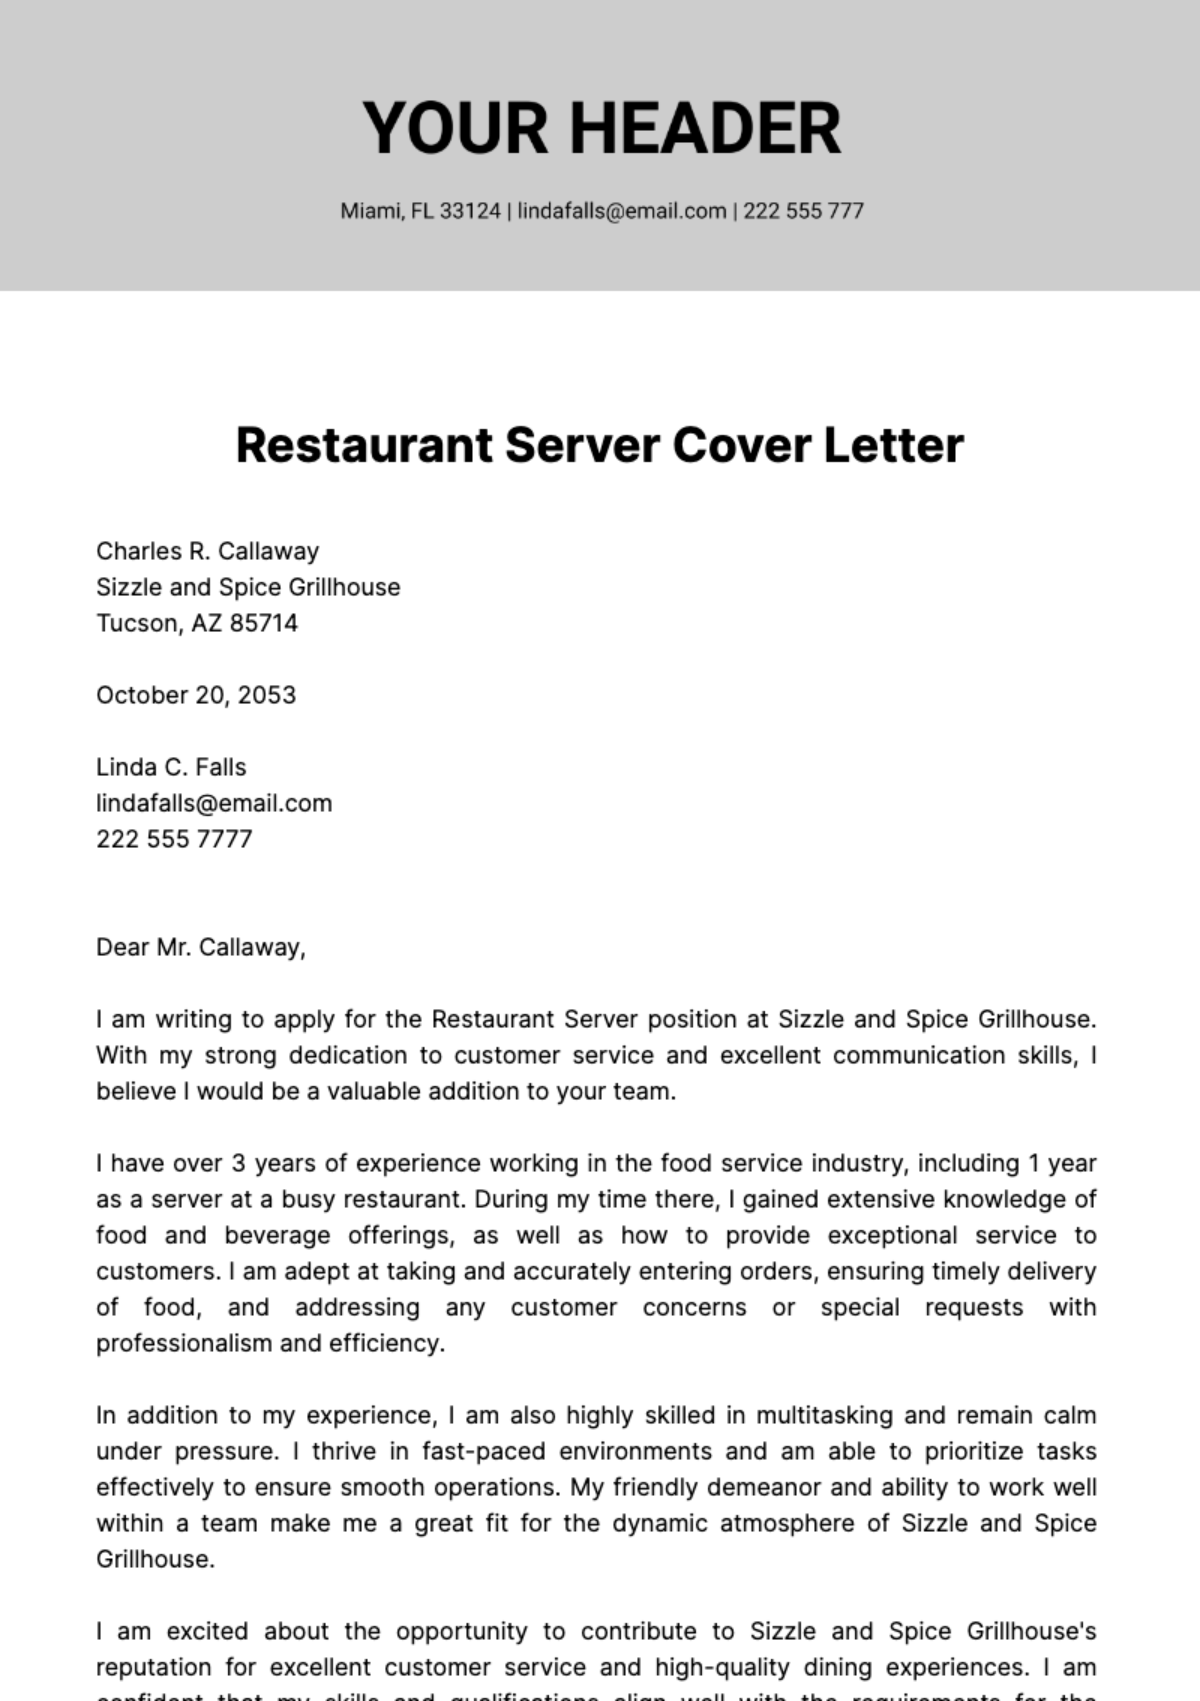 Restaurant Server Cover Letter  Template